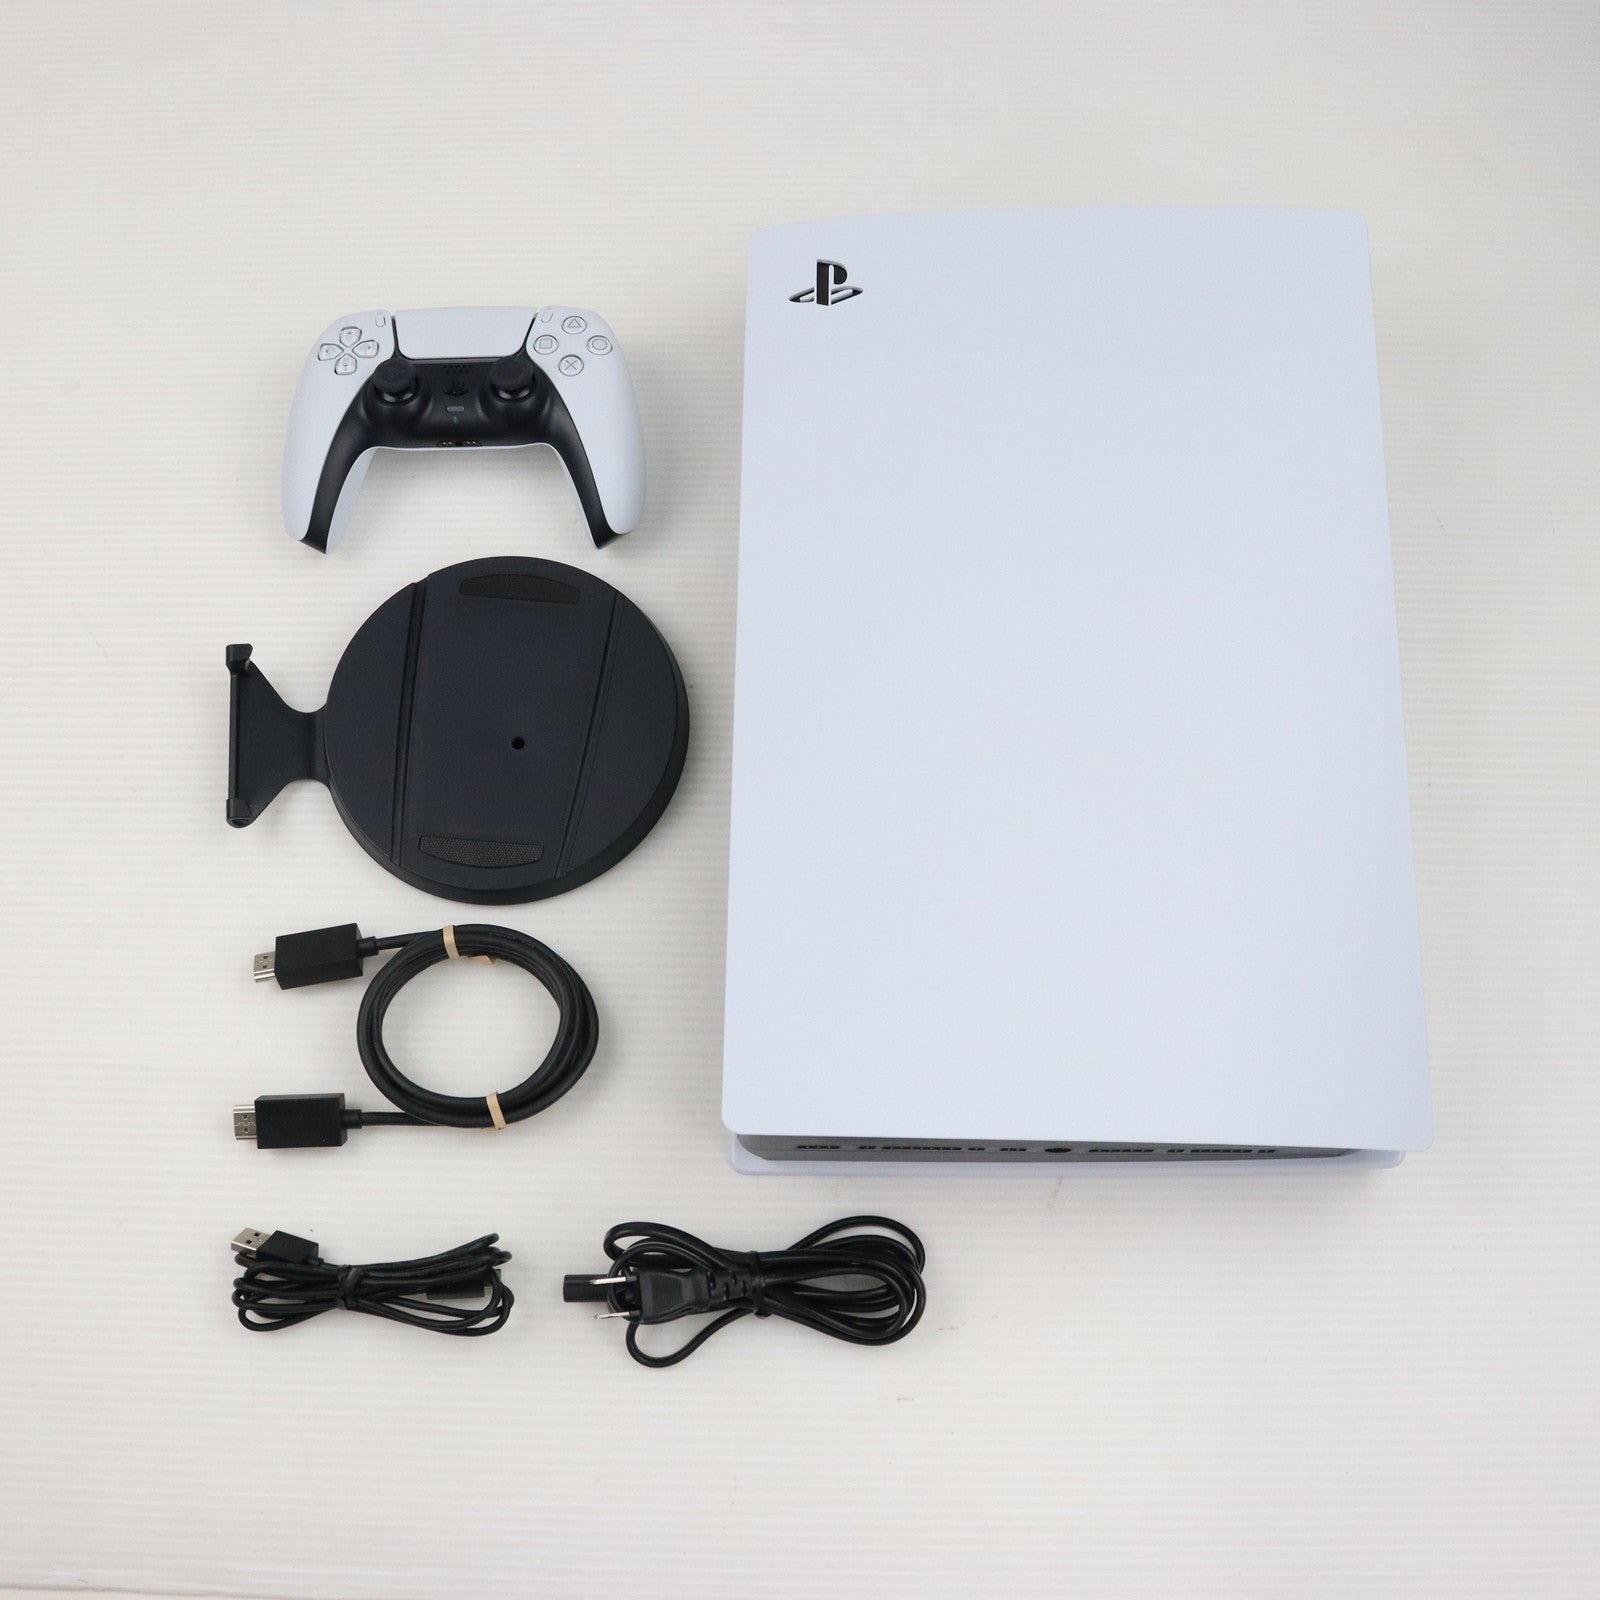 【中古即納】[本体][PS5]プレイステーション5 PlayStation5 デジタル・エディション(CFI-1200B01)(20220915)